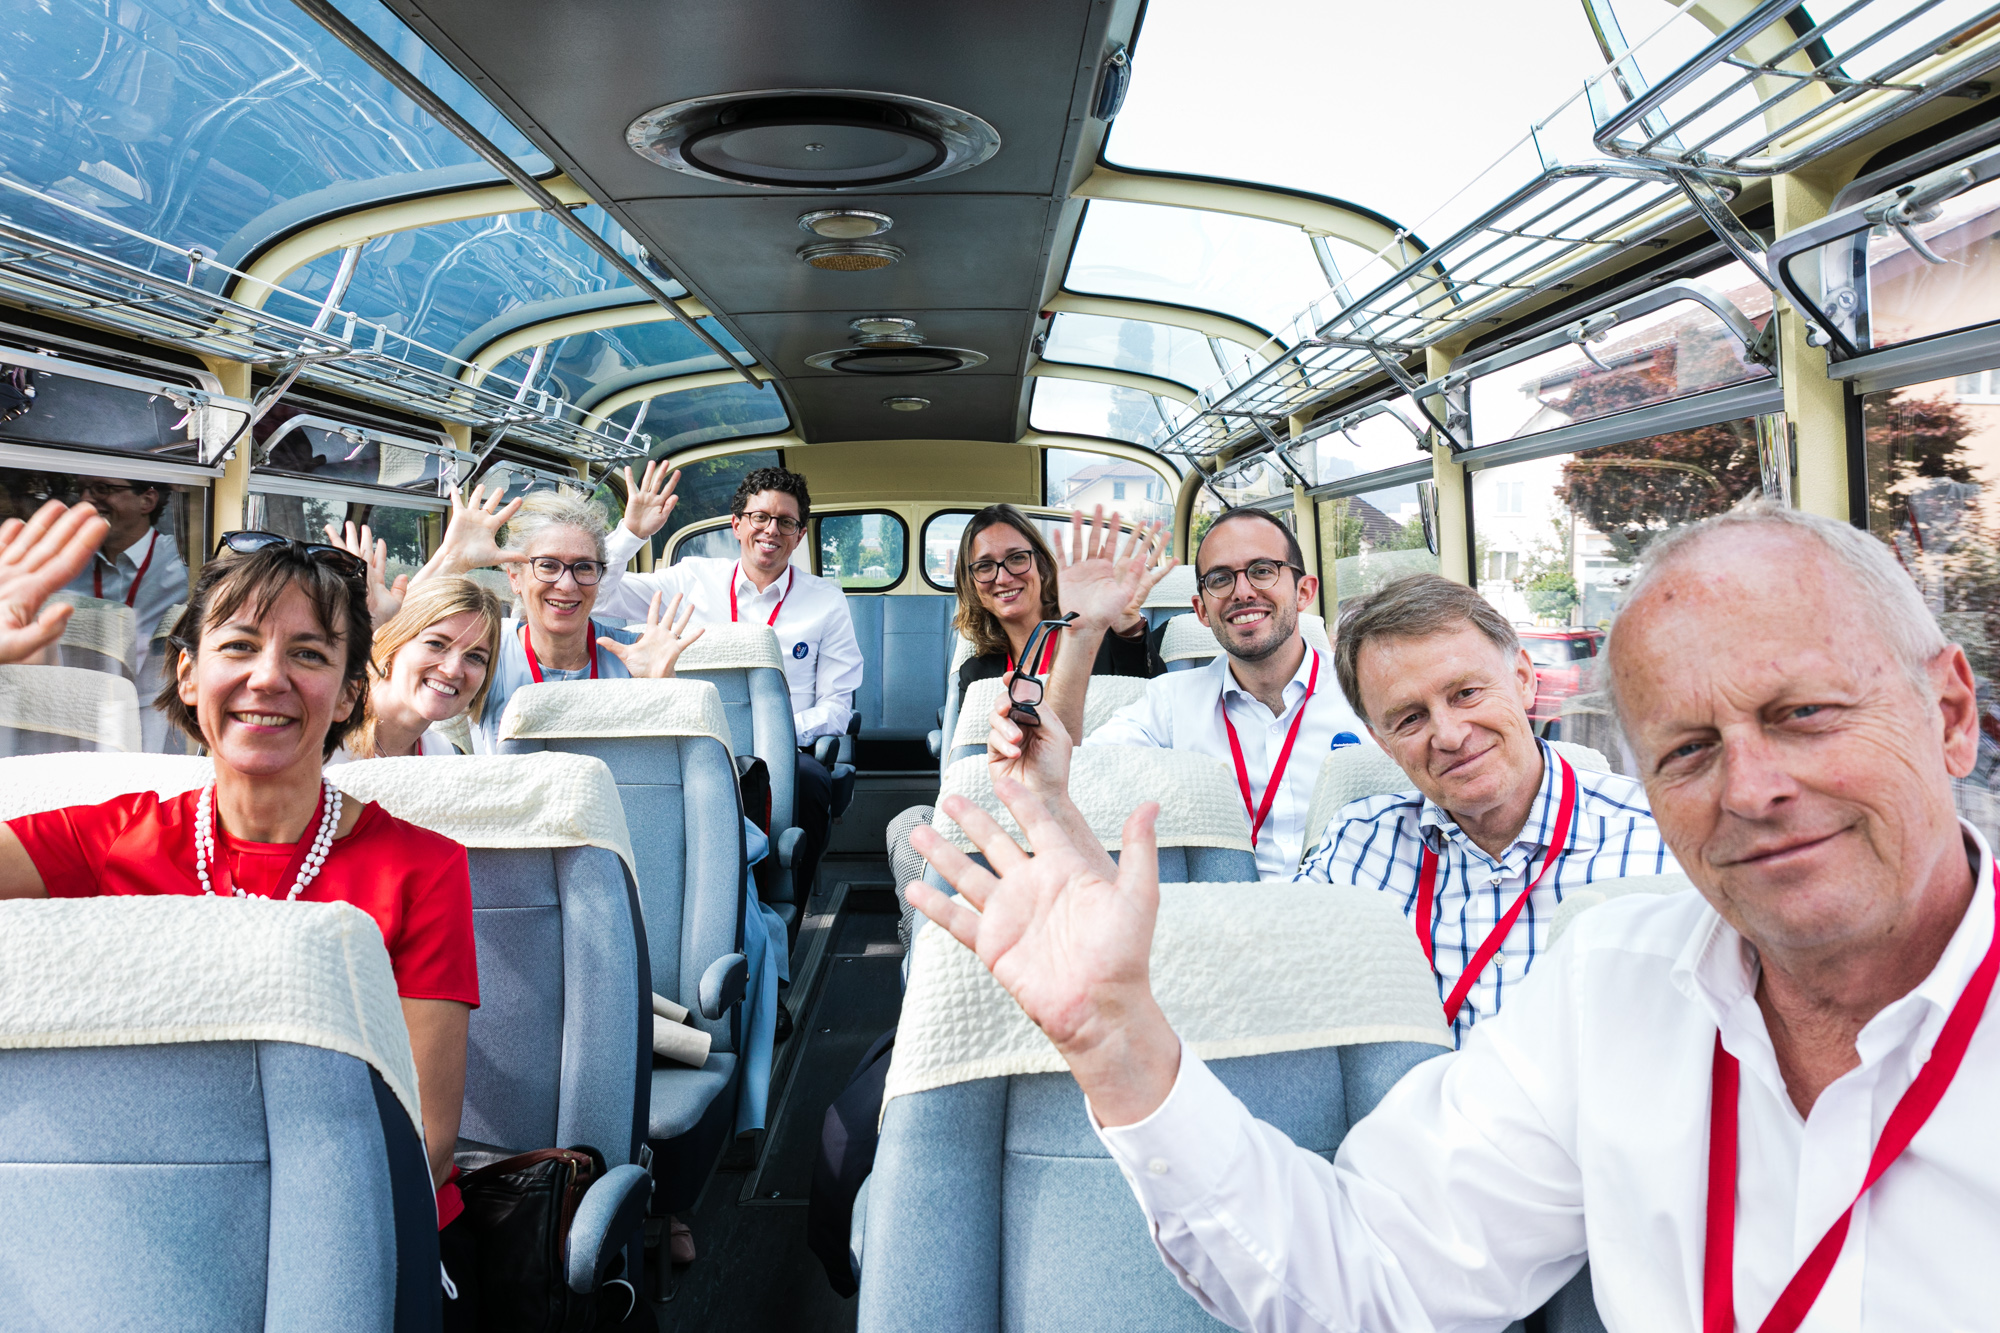 Swiss ambassadors greet from the “Meet the Ambassadors” bus.